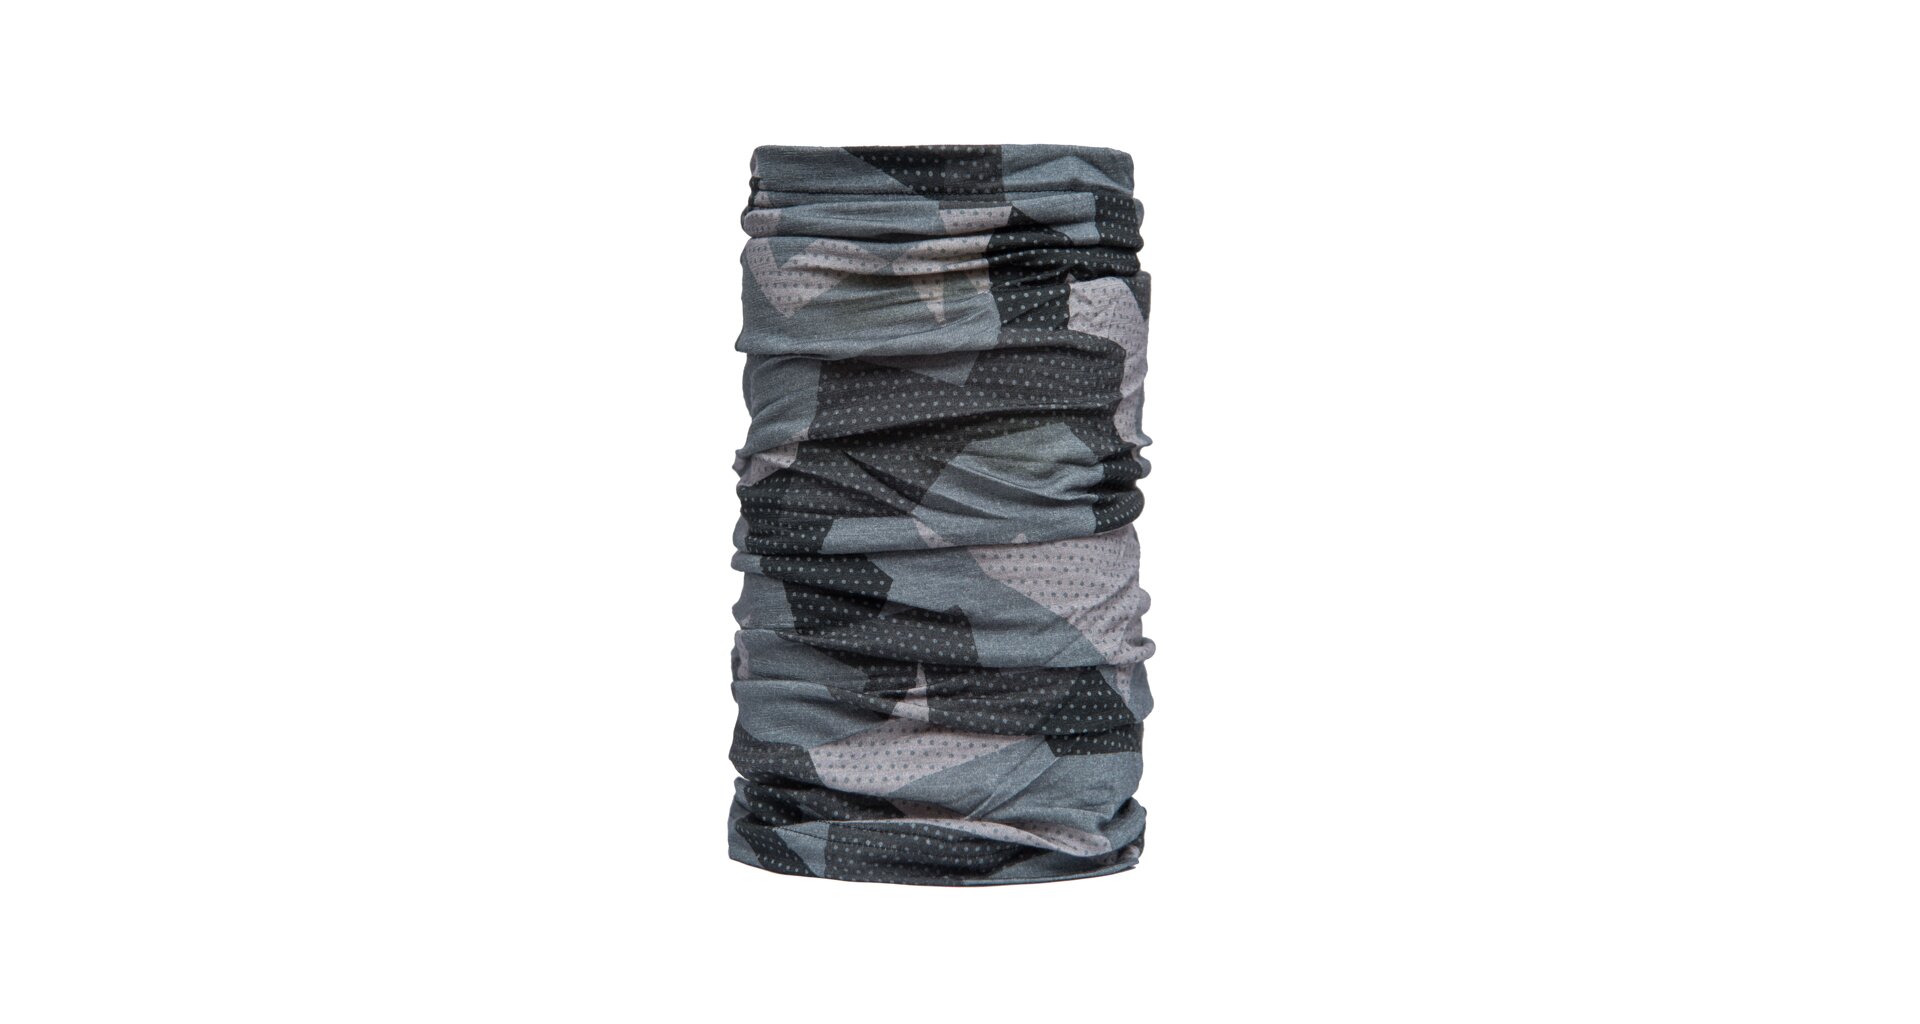 SENSOR TUBE MERINO IMPRESS šátek multifunkční černá/camo